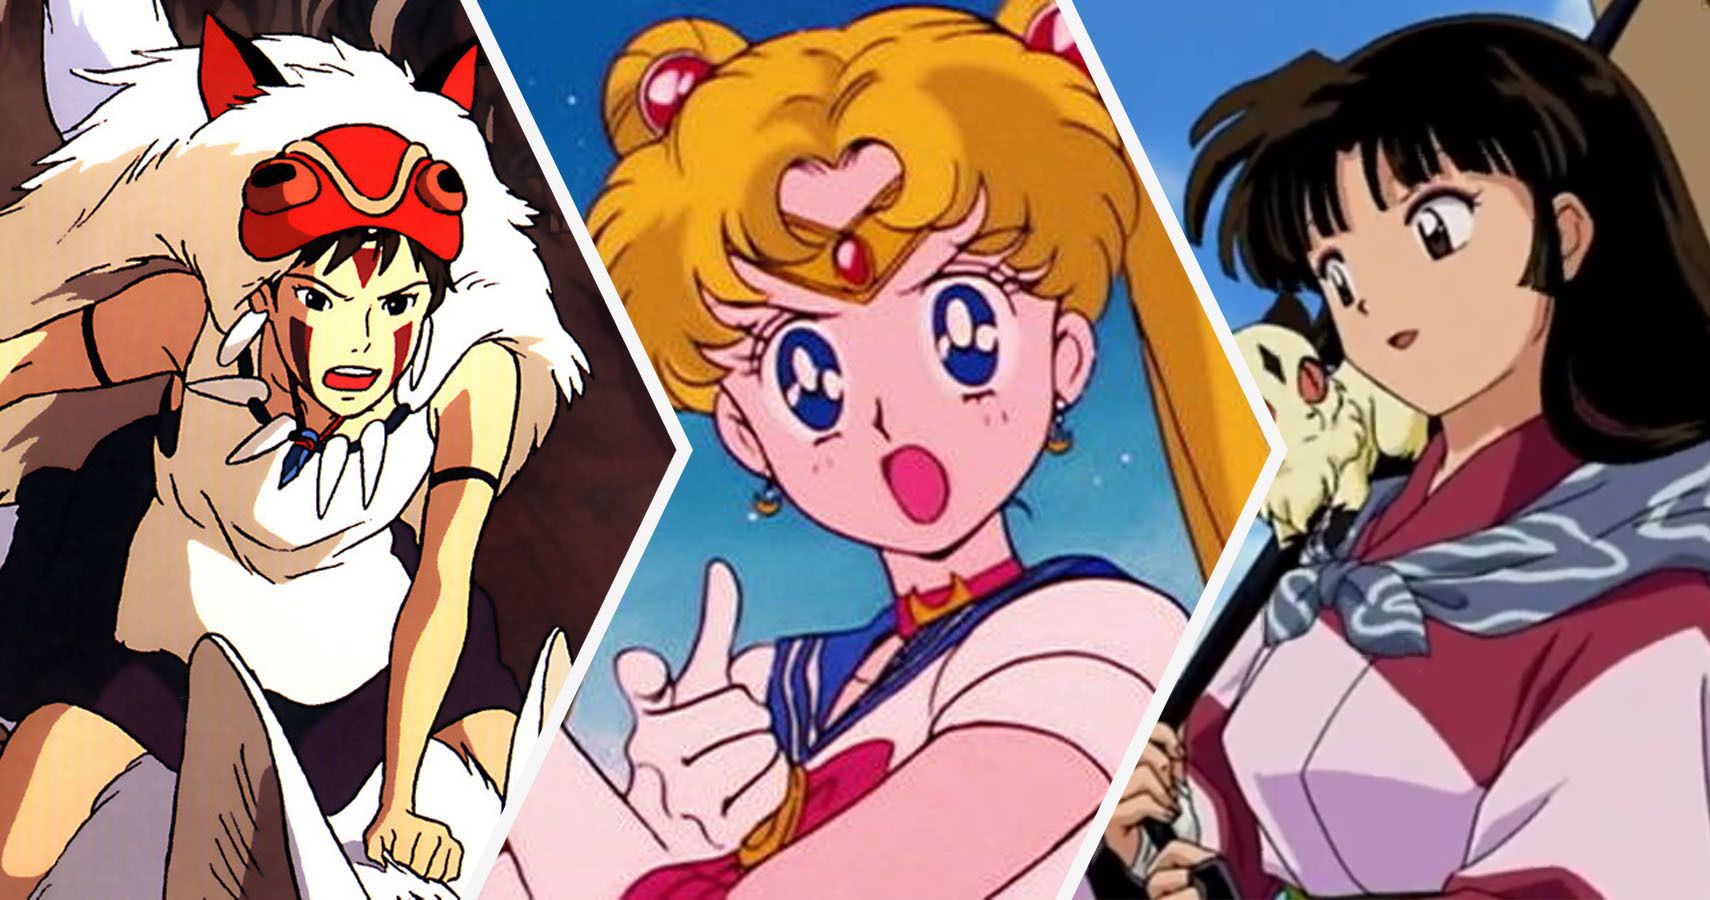 3 way split of Princess Mononoke, Sailor Moon, and Sango from Inuyasha